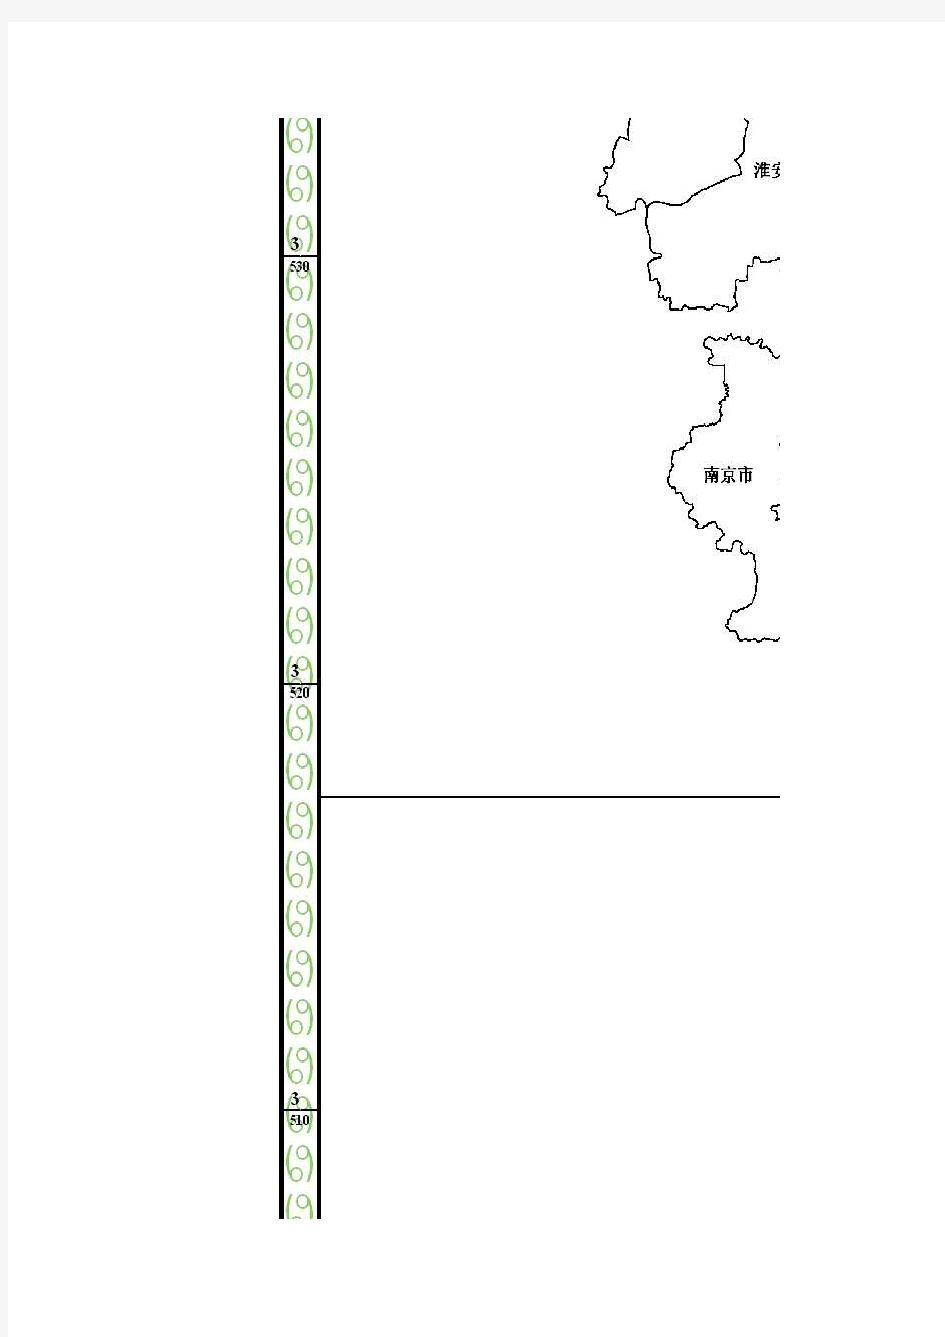 无锡市土地利用总体规划(2006-2020年)无锡市基本农田保护规划图